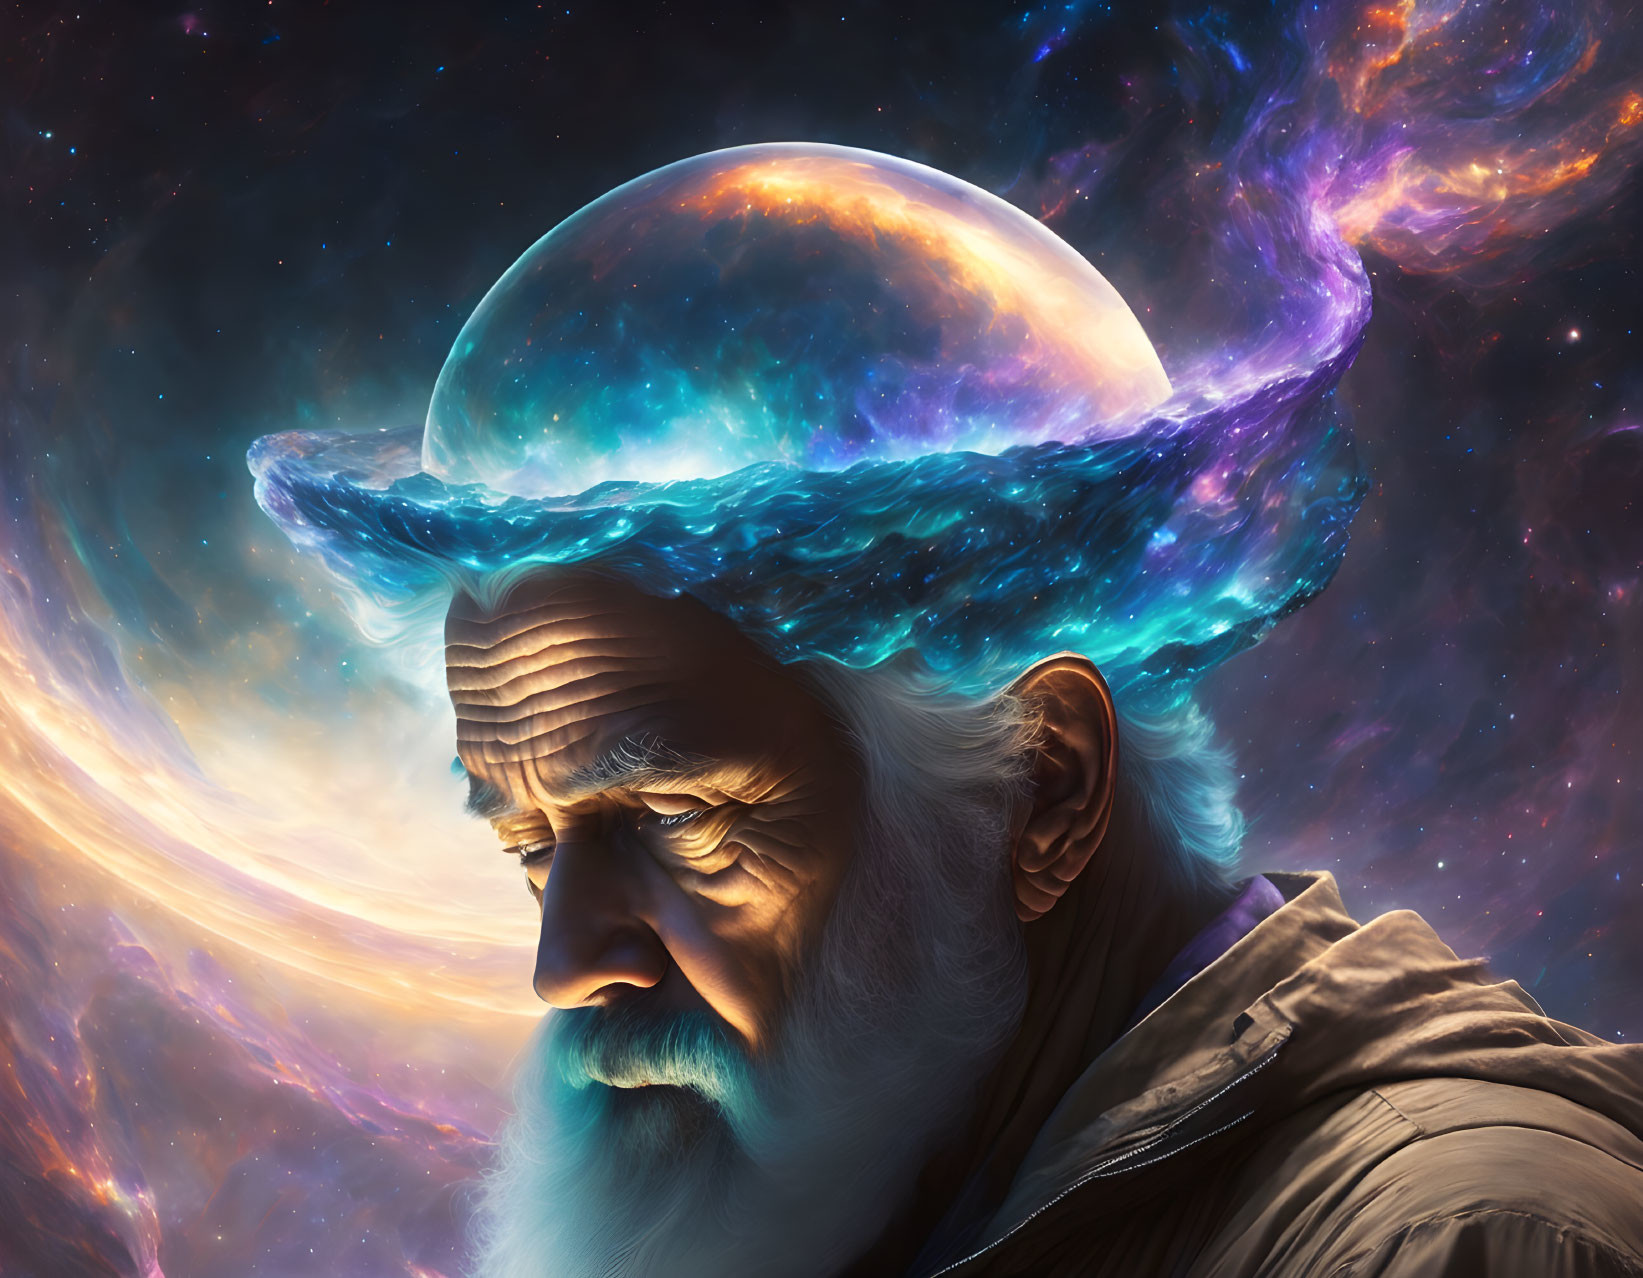 Elderly man wearing cosmic galaxy hat in star-filled nebula scene